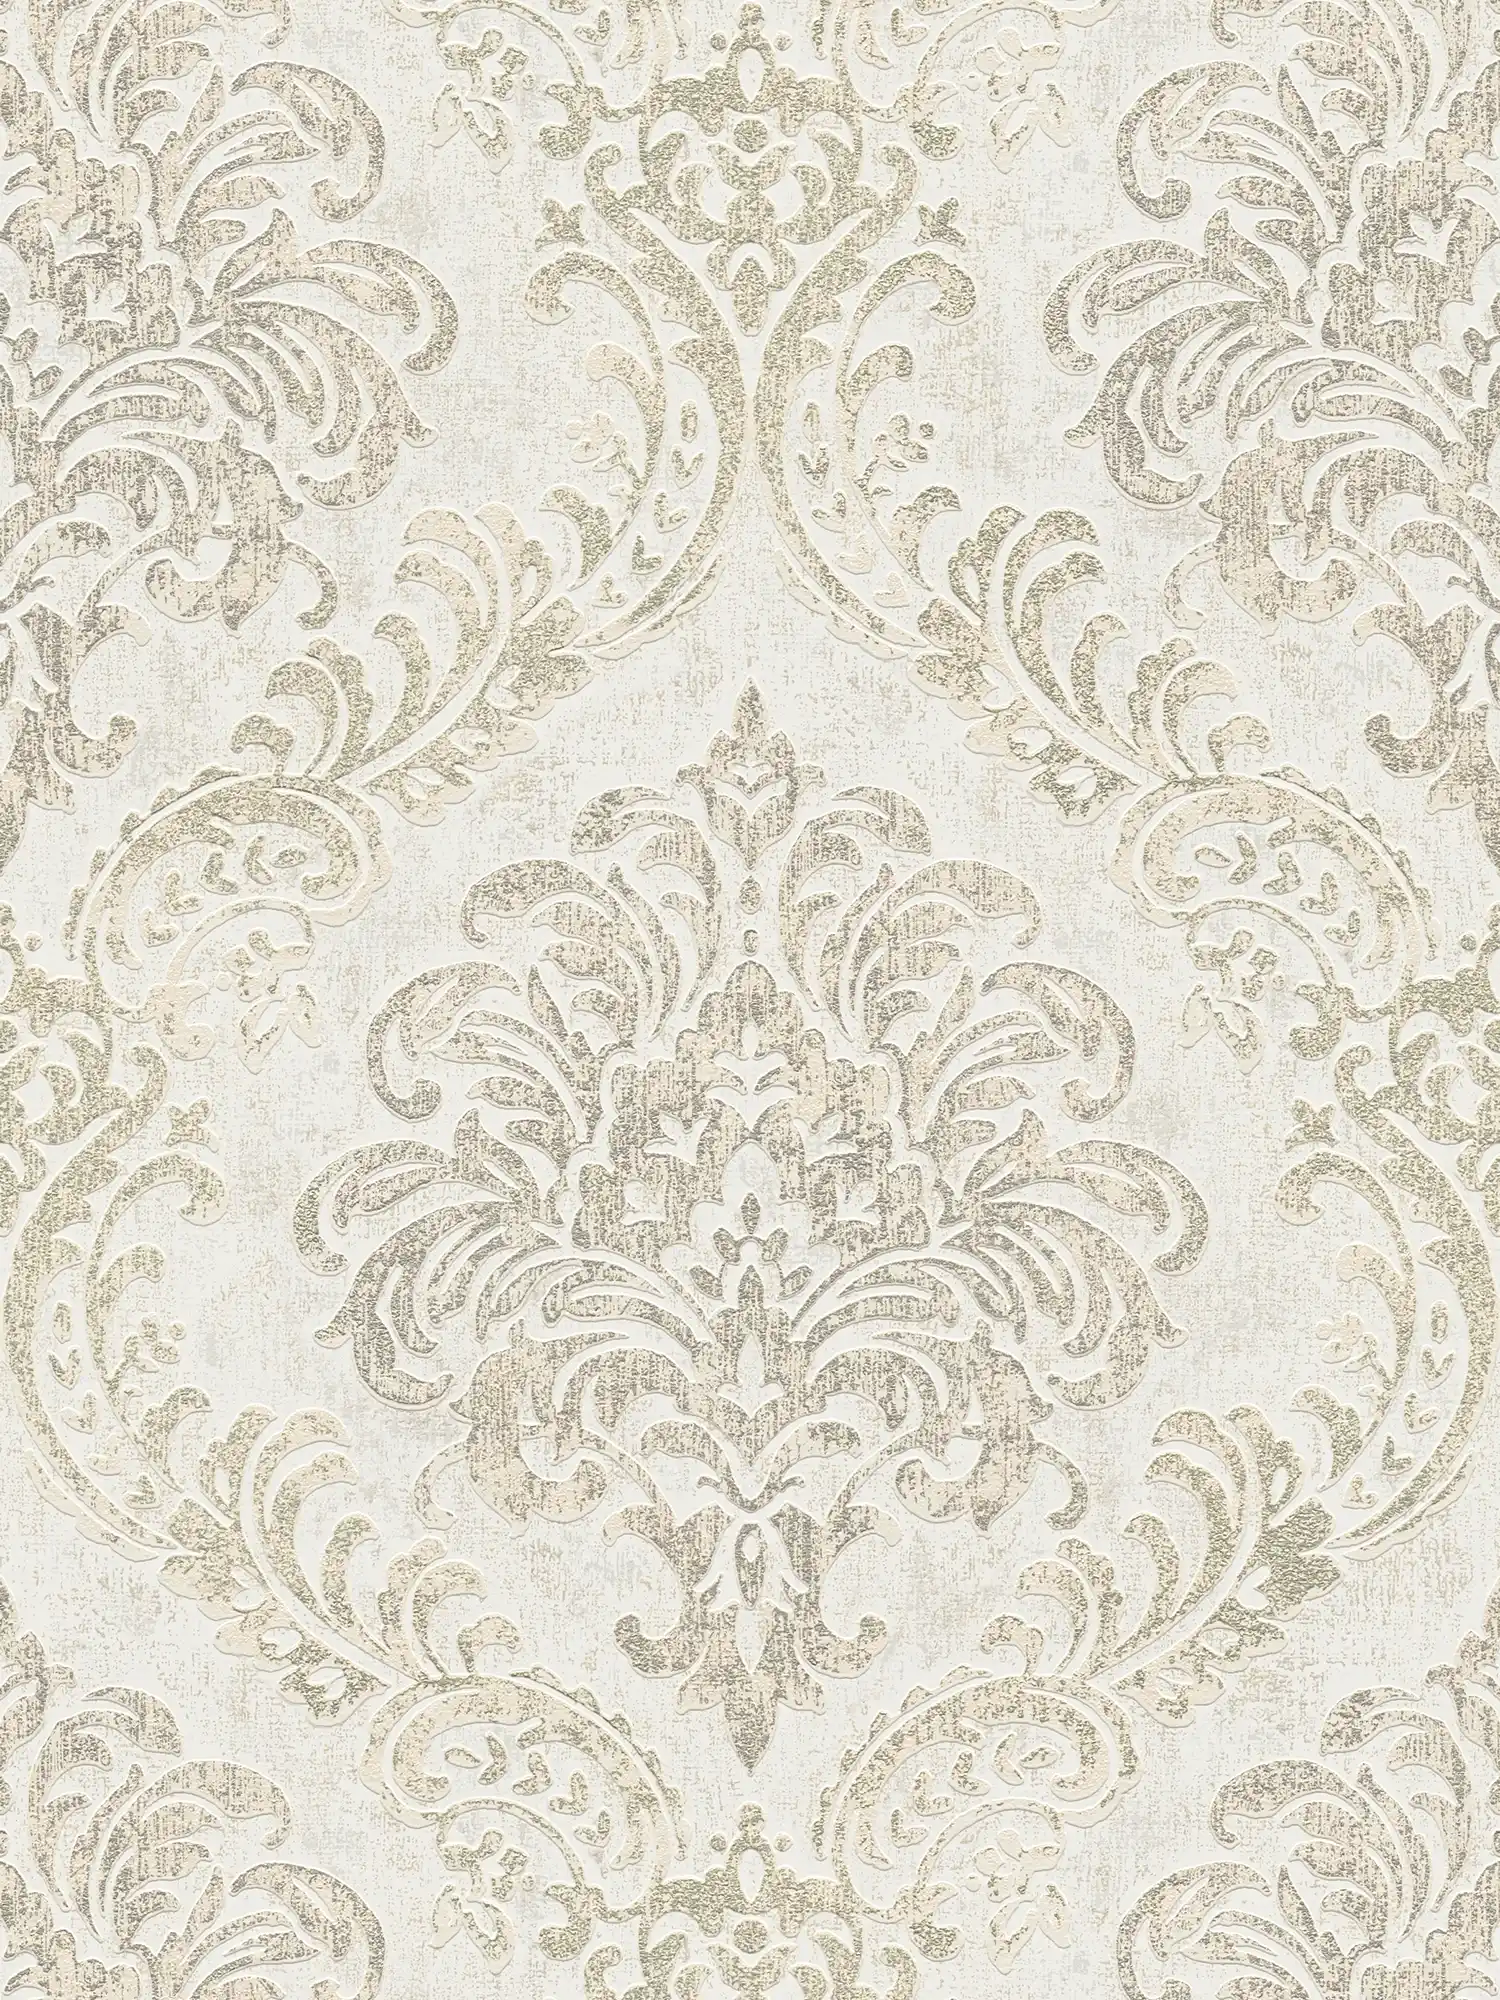 Papier peint baroque avec ornement & look métallique - blanc, argent, or
